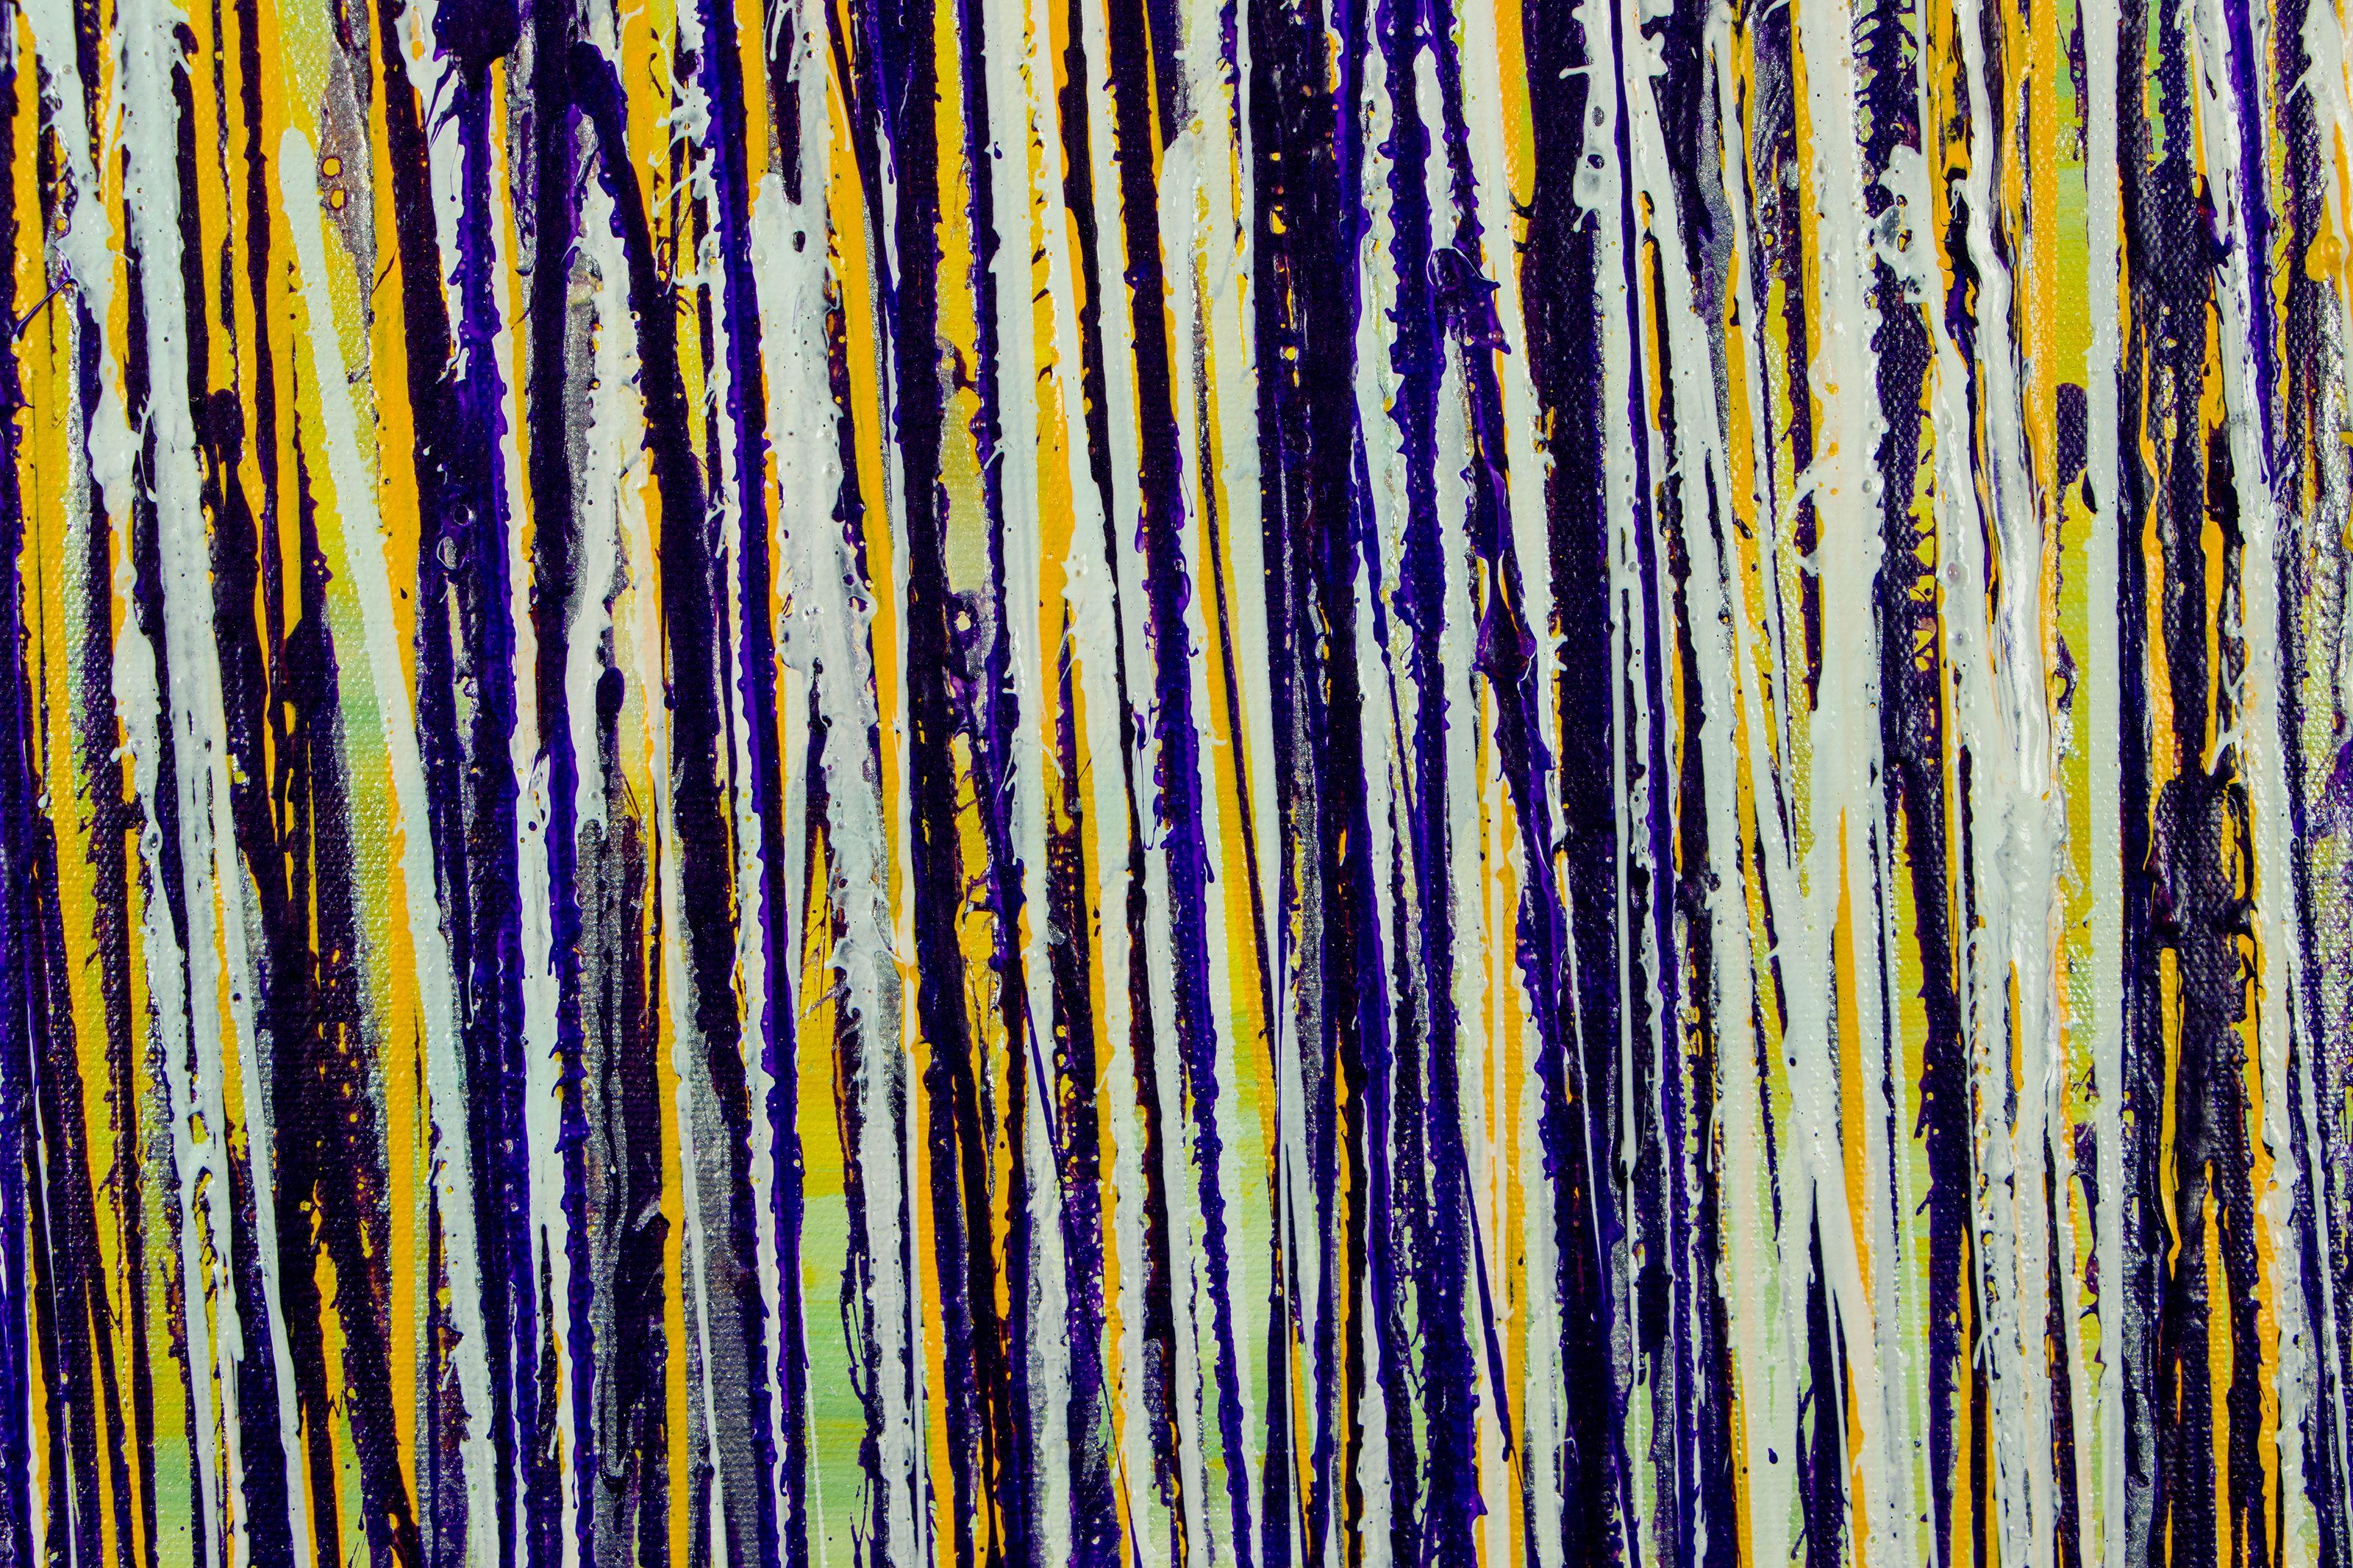 Jardin verdoyant (réflections violettes et jaunes), peinture, acrylique sur toile - Abstrait Painting par Nestor Toro